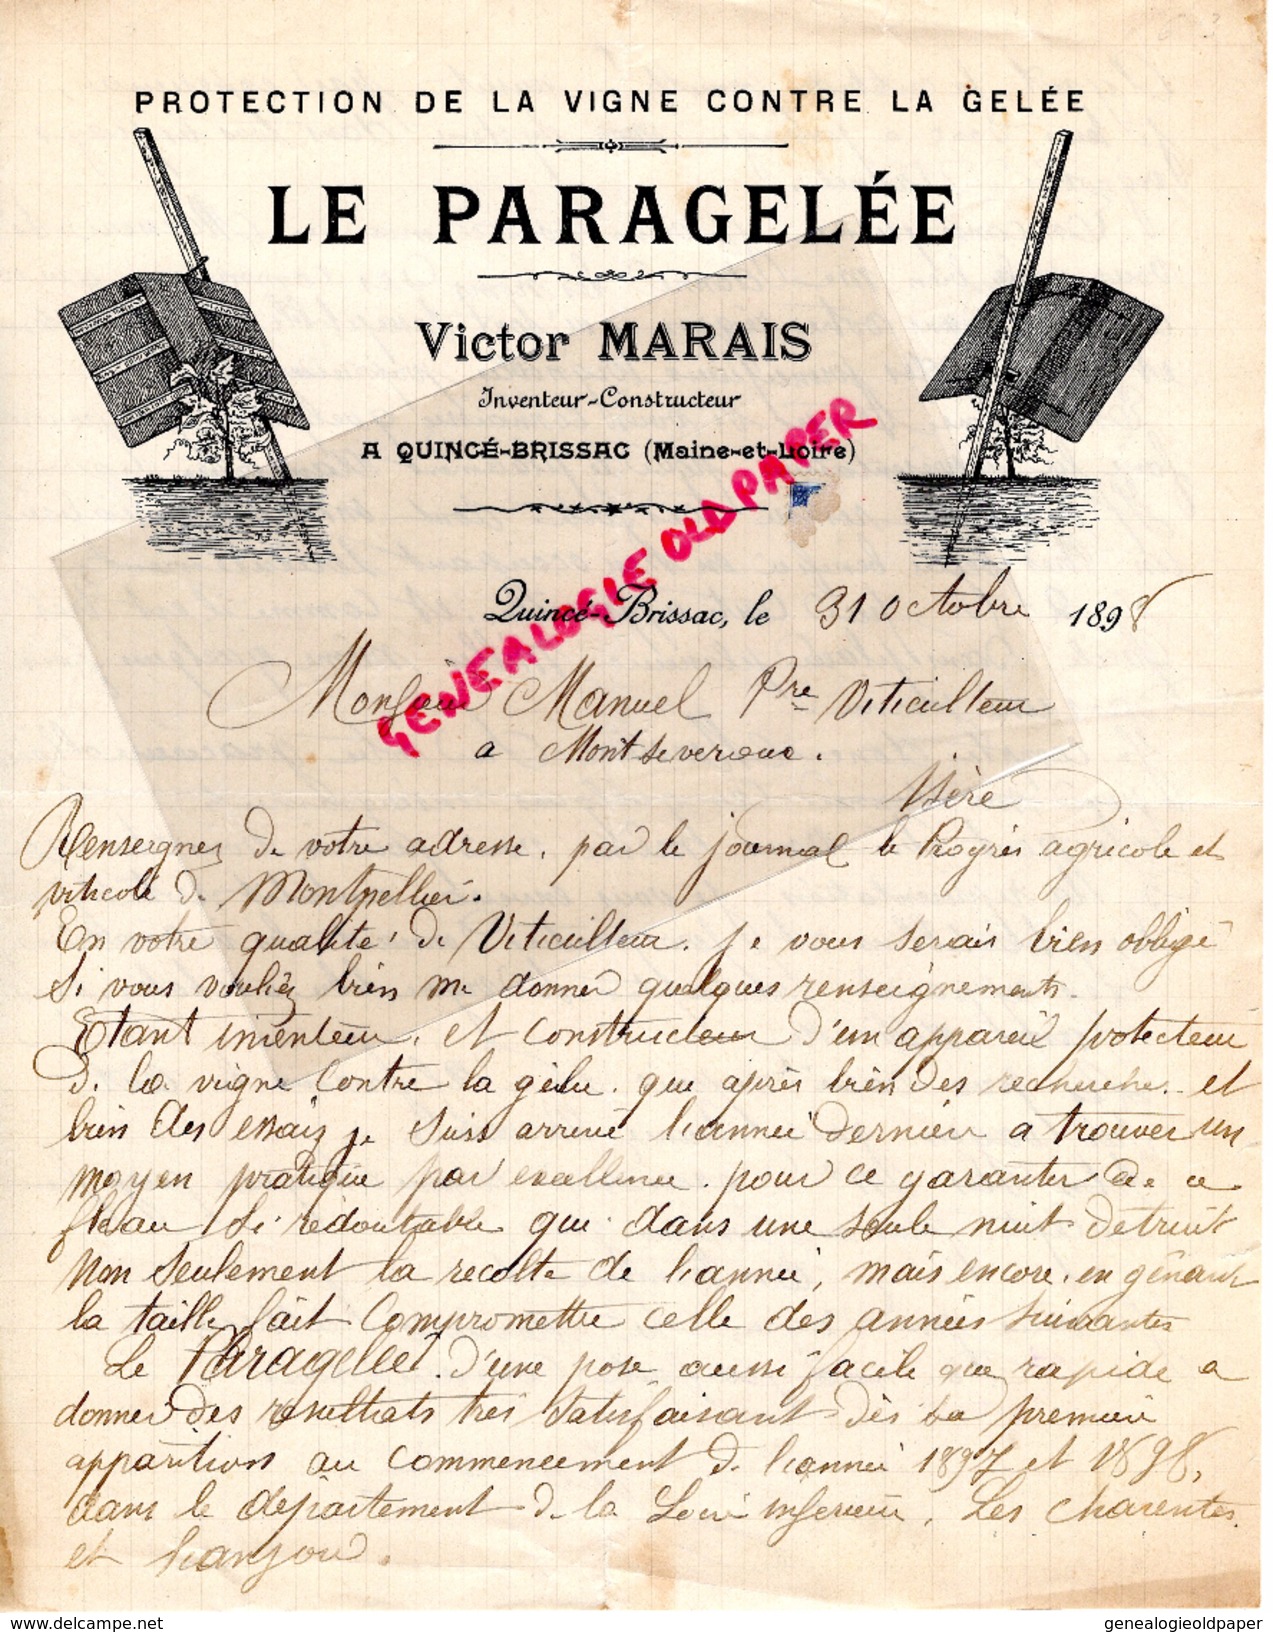 49-  QUINCE BRISSAC- LETTRE MANUSCRITE SIGNEE- LE PARAGELEE- VICTOR MARAIS-PROTECTION DE LA VIGNE CONTRE LA GELEE- 1898 - Old Professions